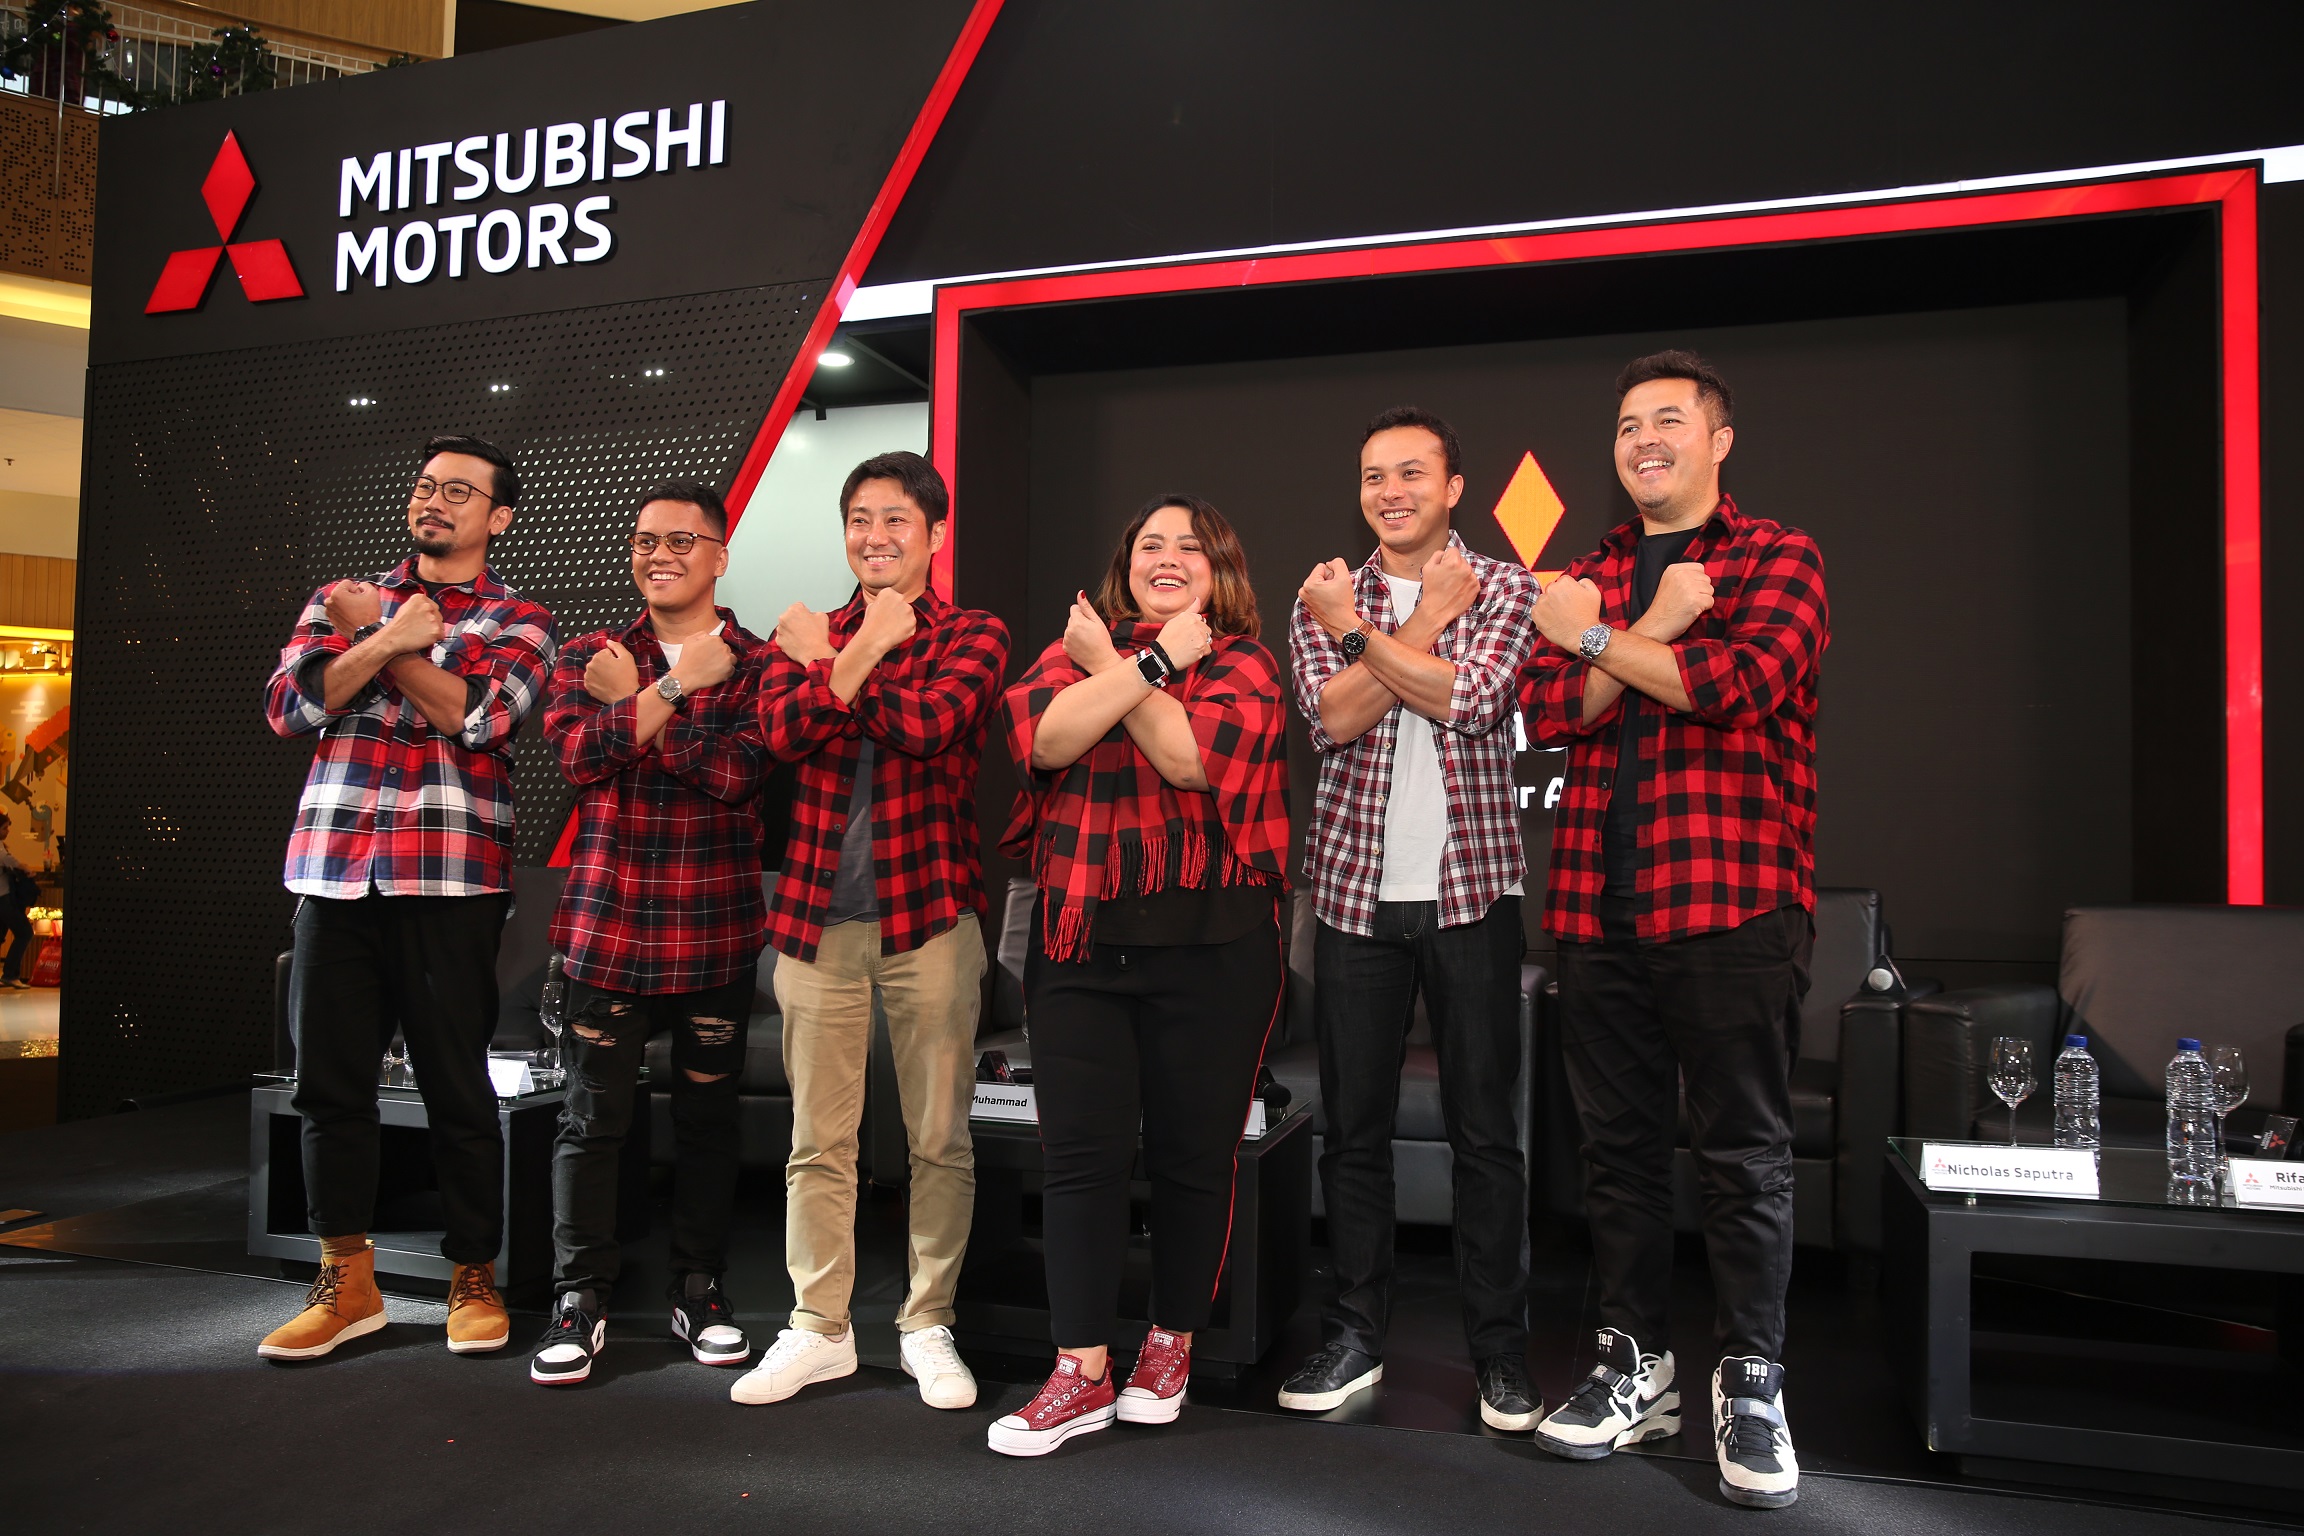 Mitsubishi Motors Persembahkan #AyoGasTerus Photo Story Competition untuk Capai Petualangan Impian